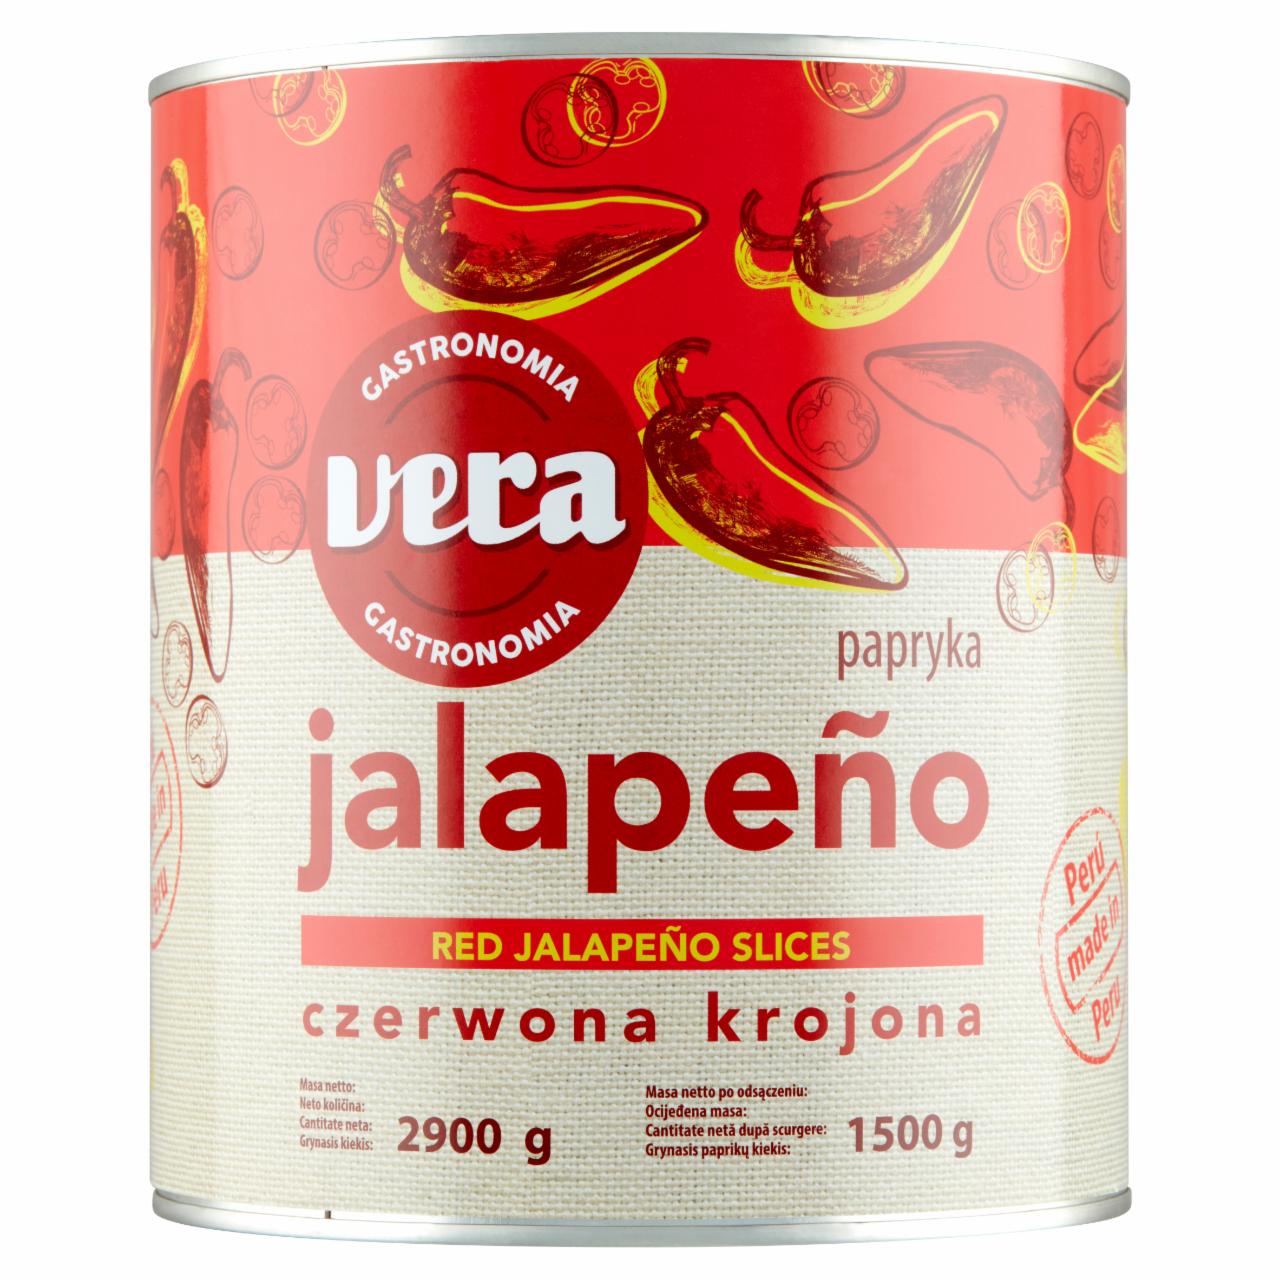 Zdjęcia - Vera Gastronomia Papryka Jalapeño czerwona krojona 2900 g